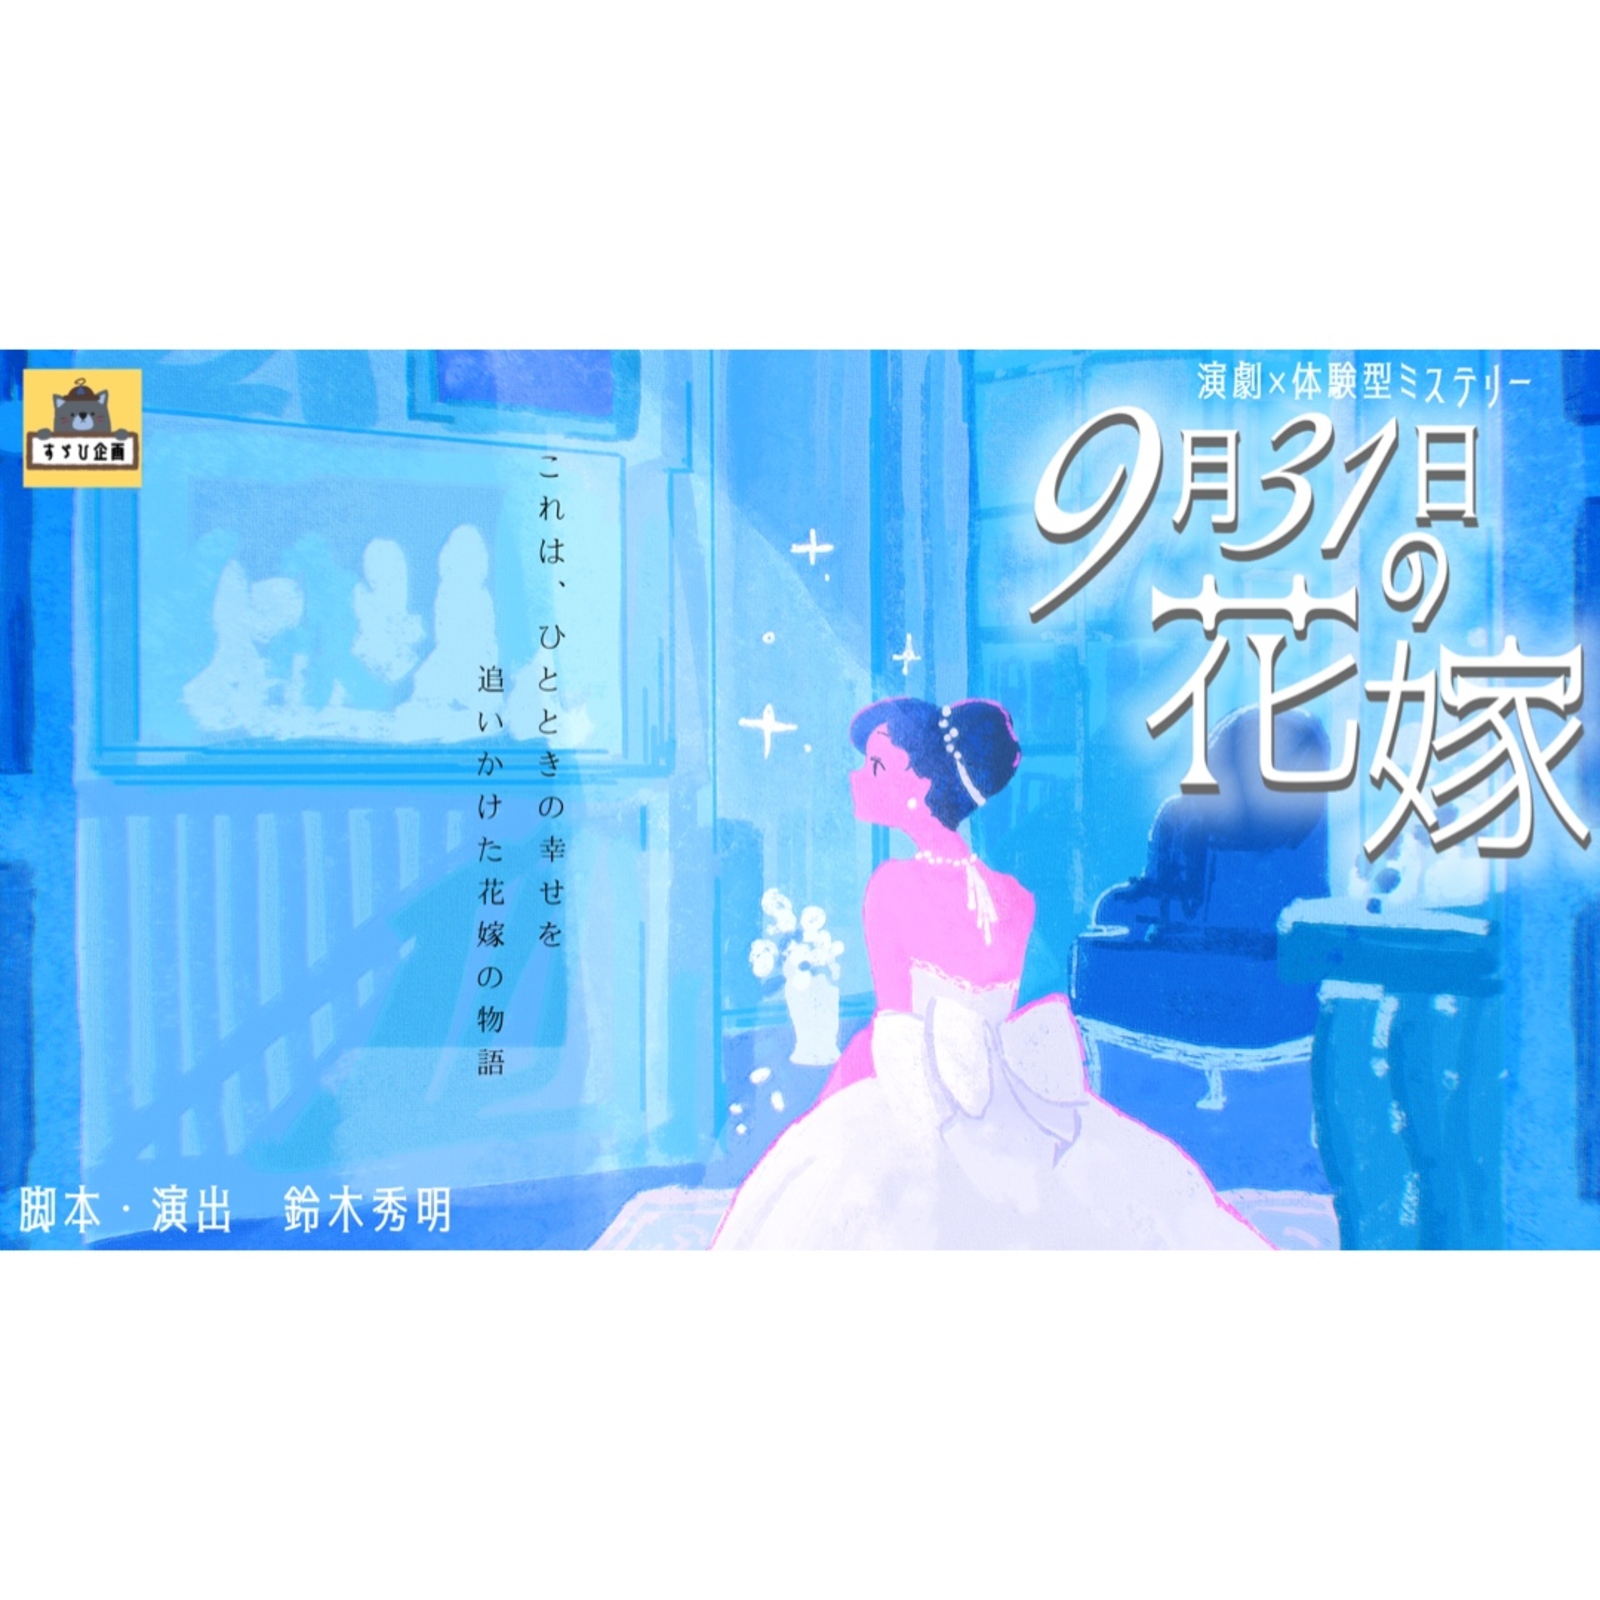 【吉祥寺】演劇×体験型ミステリー『9月31日の花嫁』